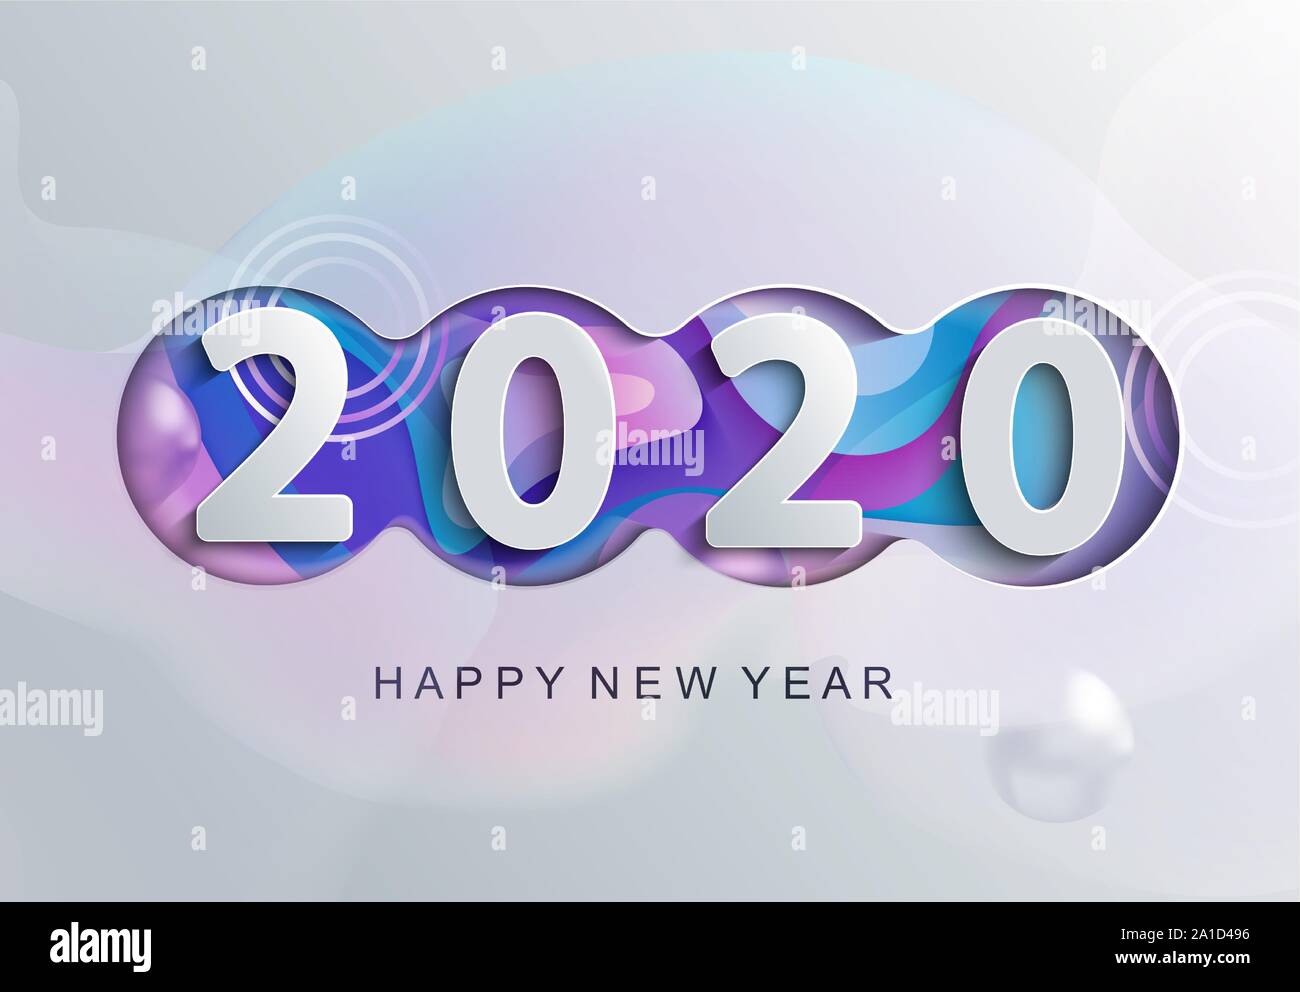 Frohes neues Jahr 2020 moderne Grußkarte mit abstrakten Hintergrund für Banner, Flyer, Einladungen, Weihnachten themed Herzlichen Glückwunsch, Banner, Poster, Stock Vektor